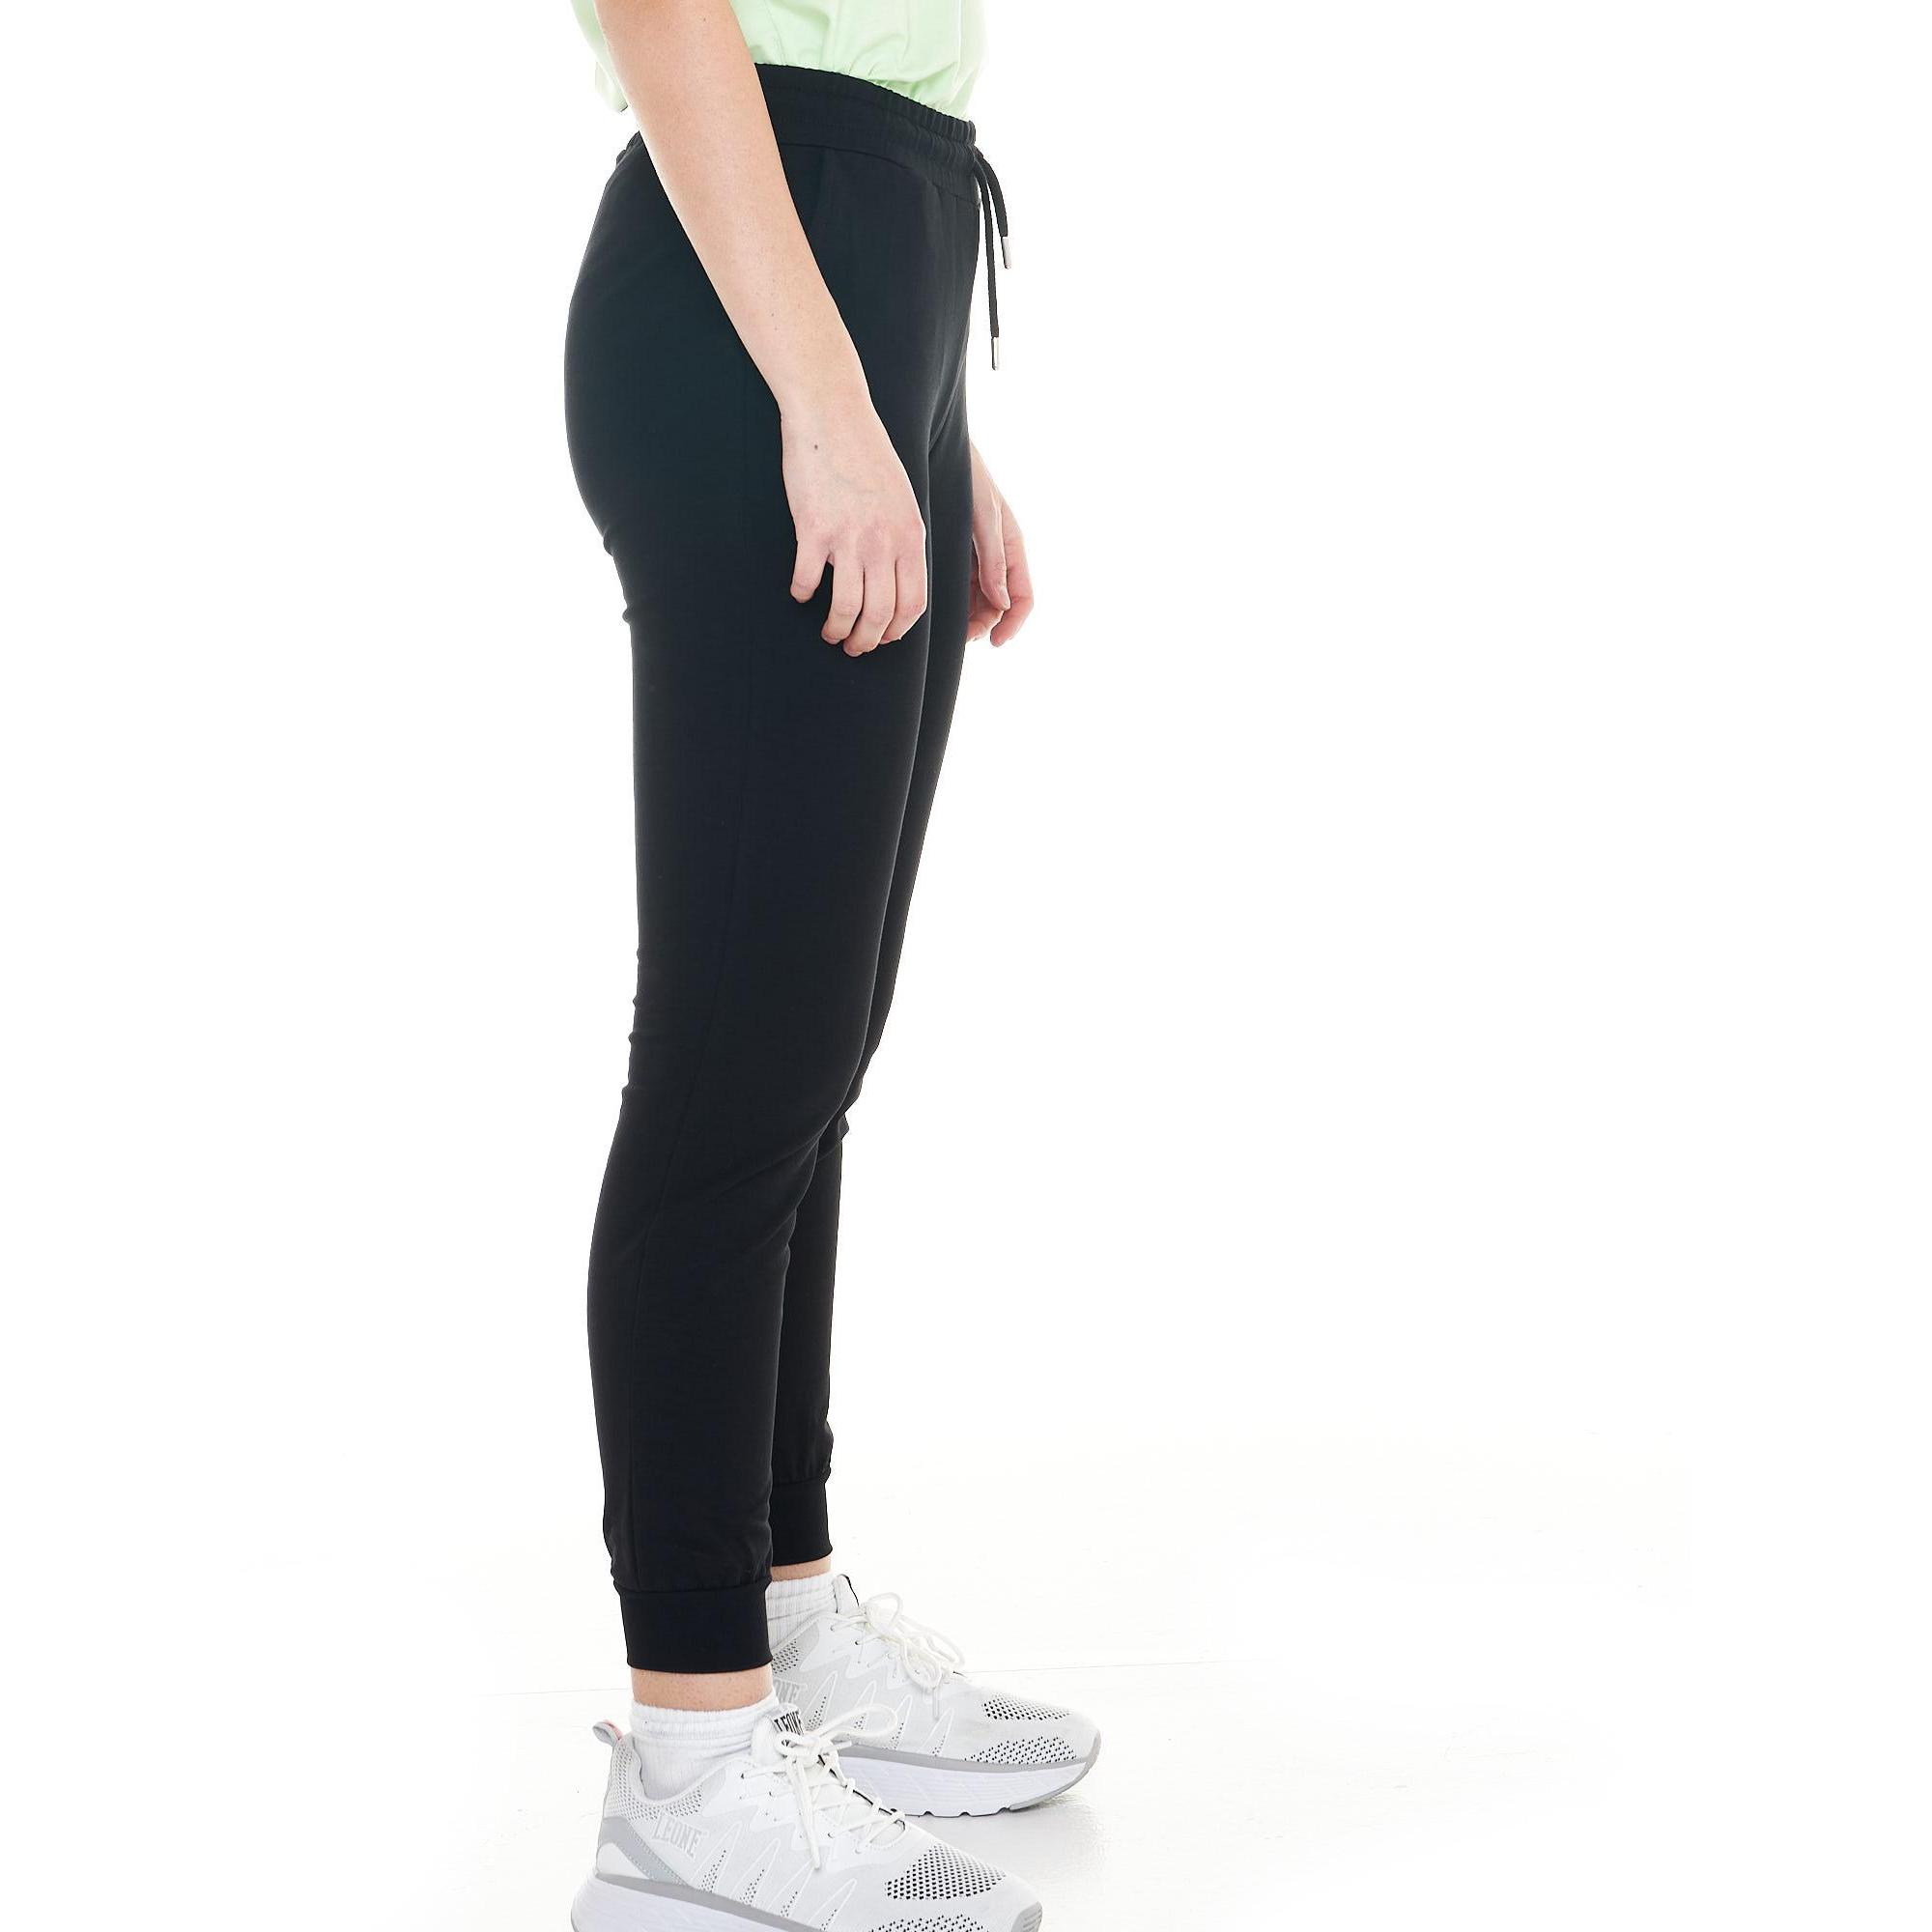 pantalon de jogging femme avec revers en bas de jambes noir pantalons femme